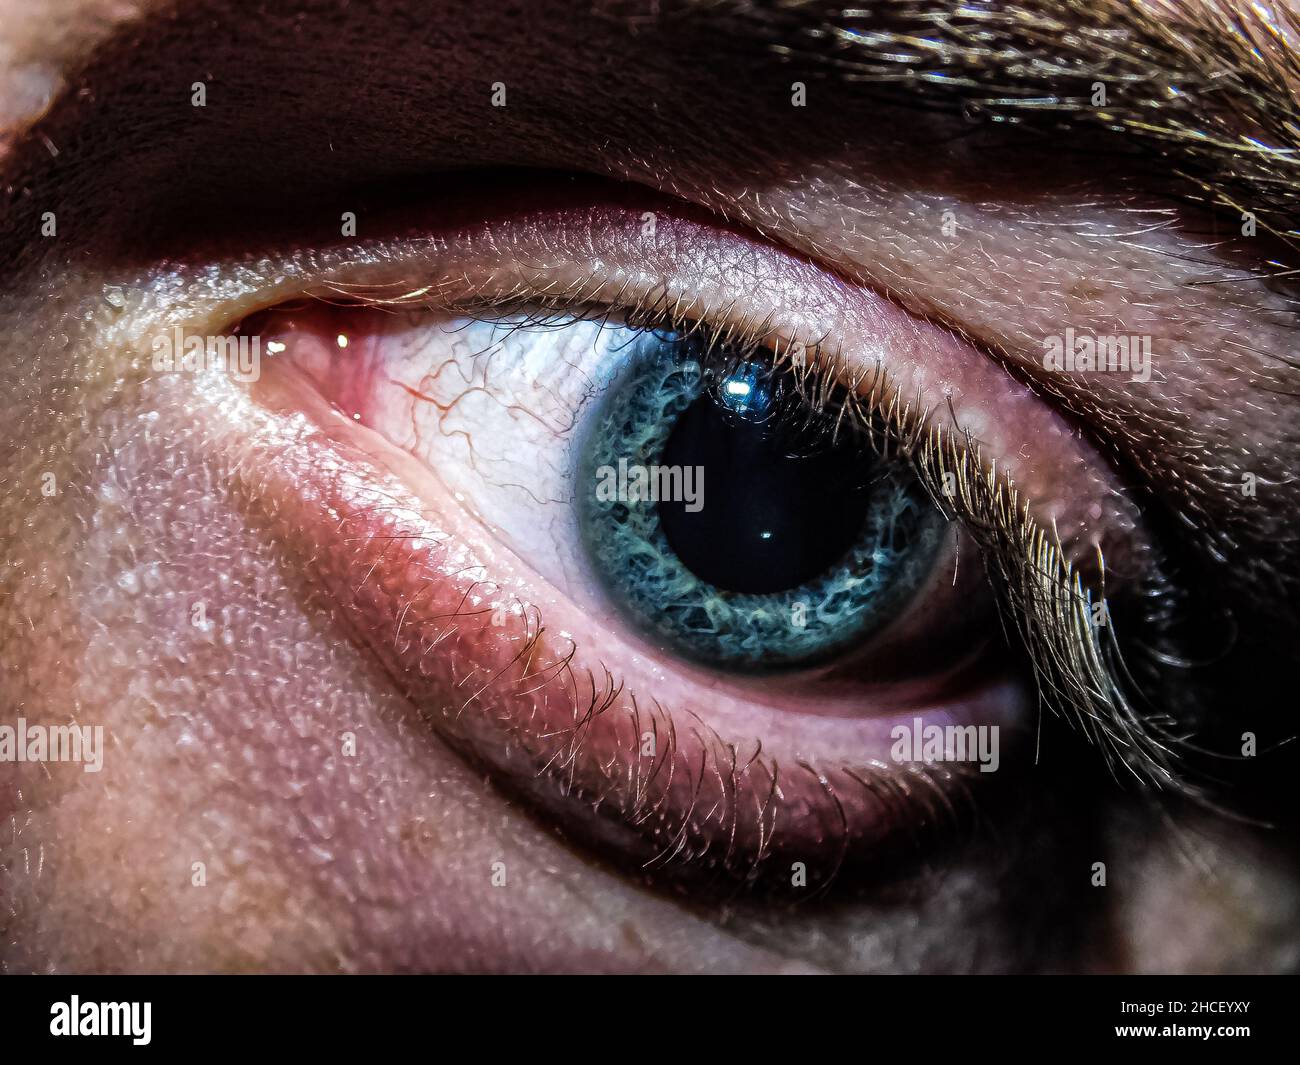 Gros plan de l'œil et du sourcil bleu profond de la personne Banque D'Images